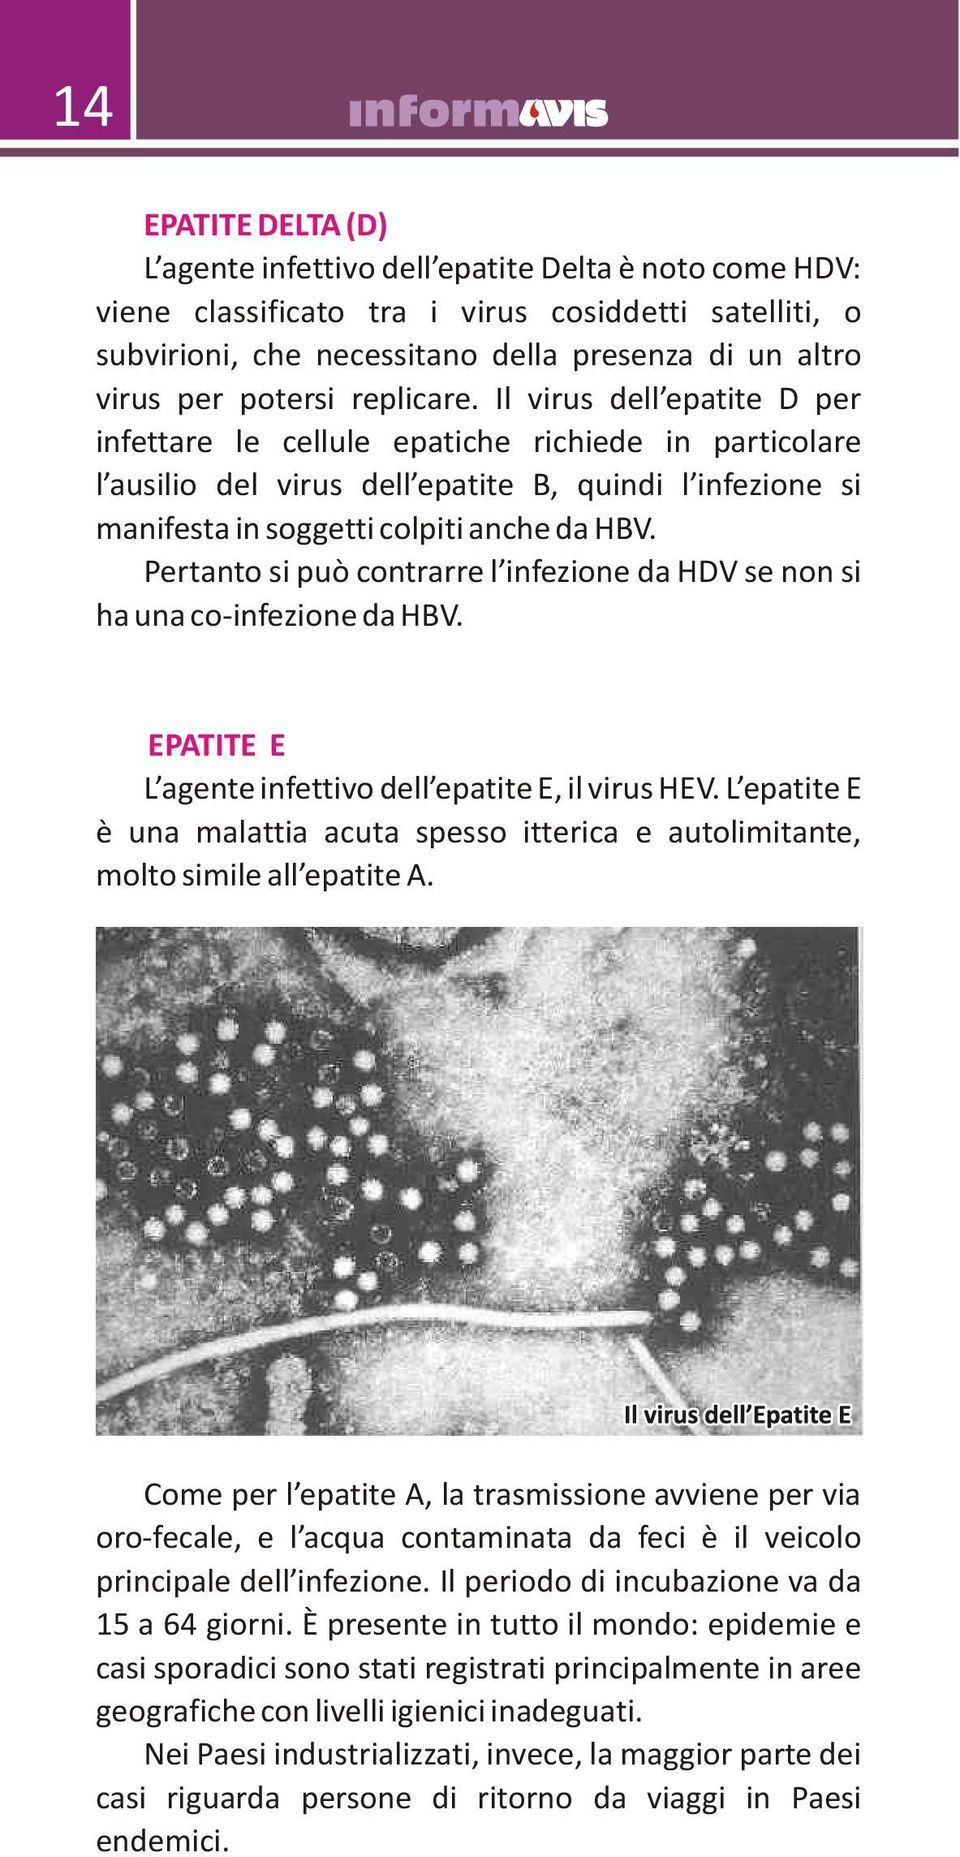 Il virus dell epatite D per infettare le cellule epatiche richiede in particolare l ausilio del virus dell epatite B, quindi l infezione si manifesta in soggetti colpiti anche da HBV.